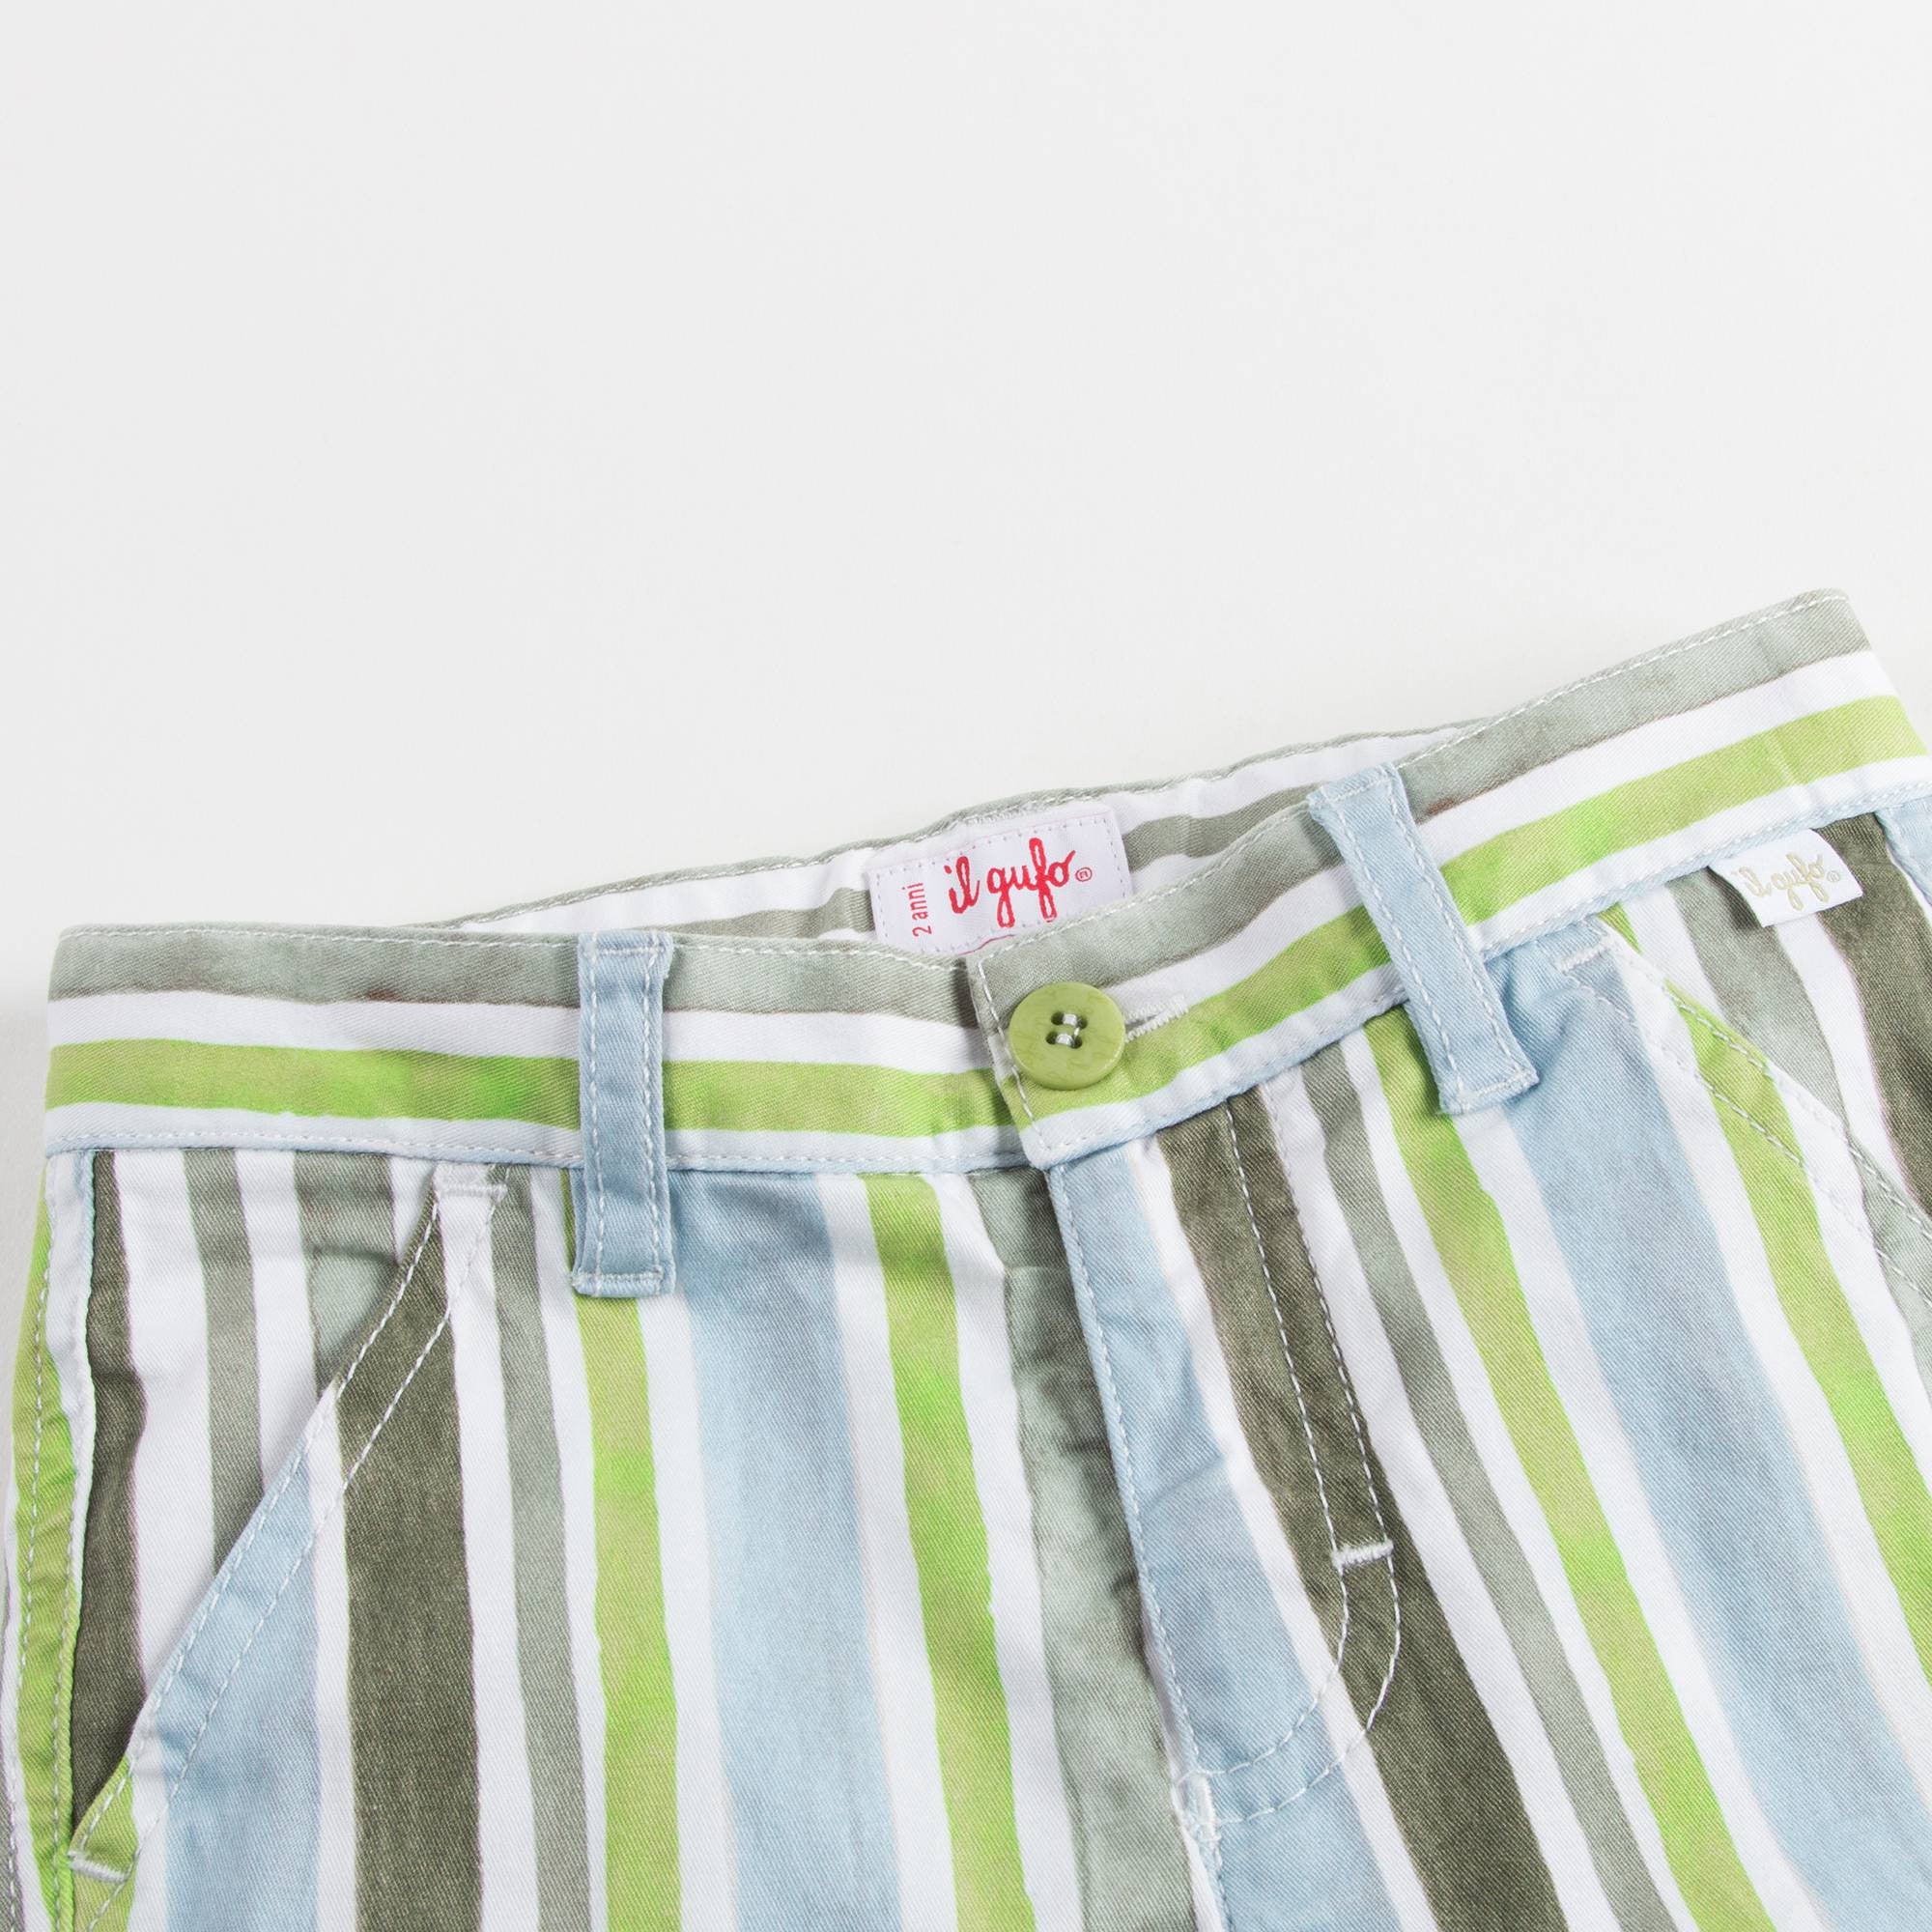 Boys Striped Watercolour Shorts